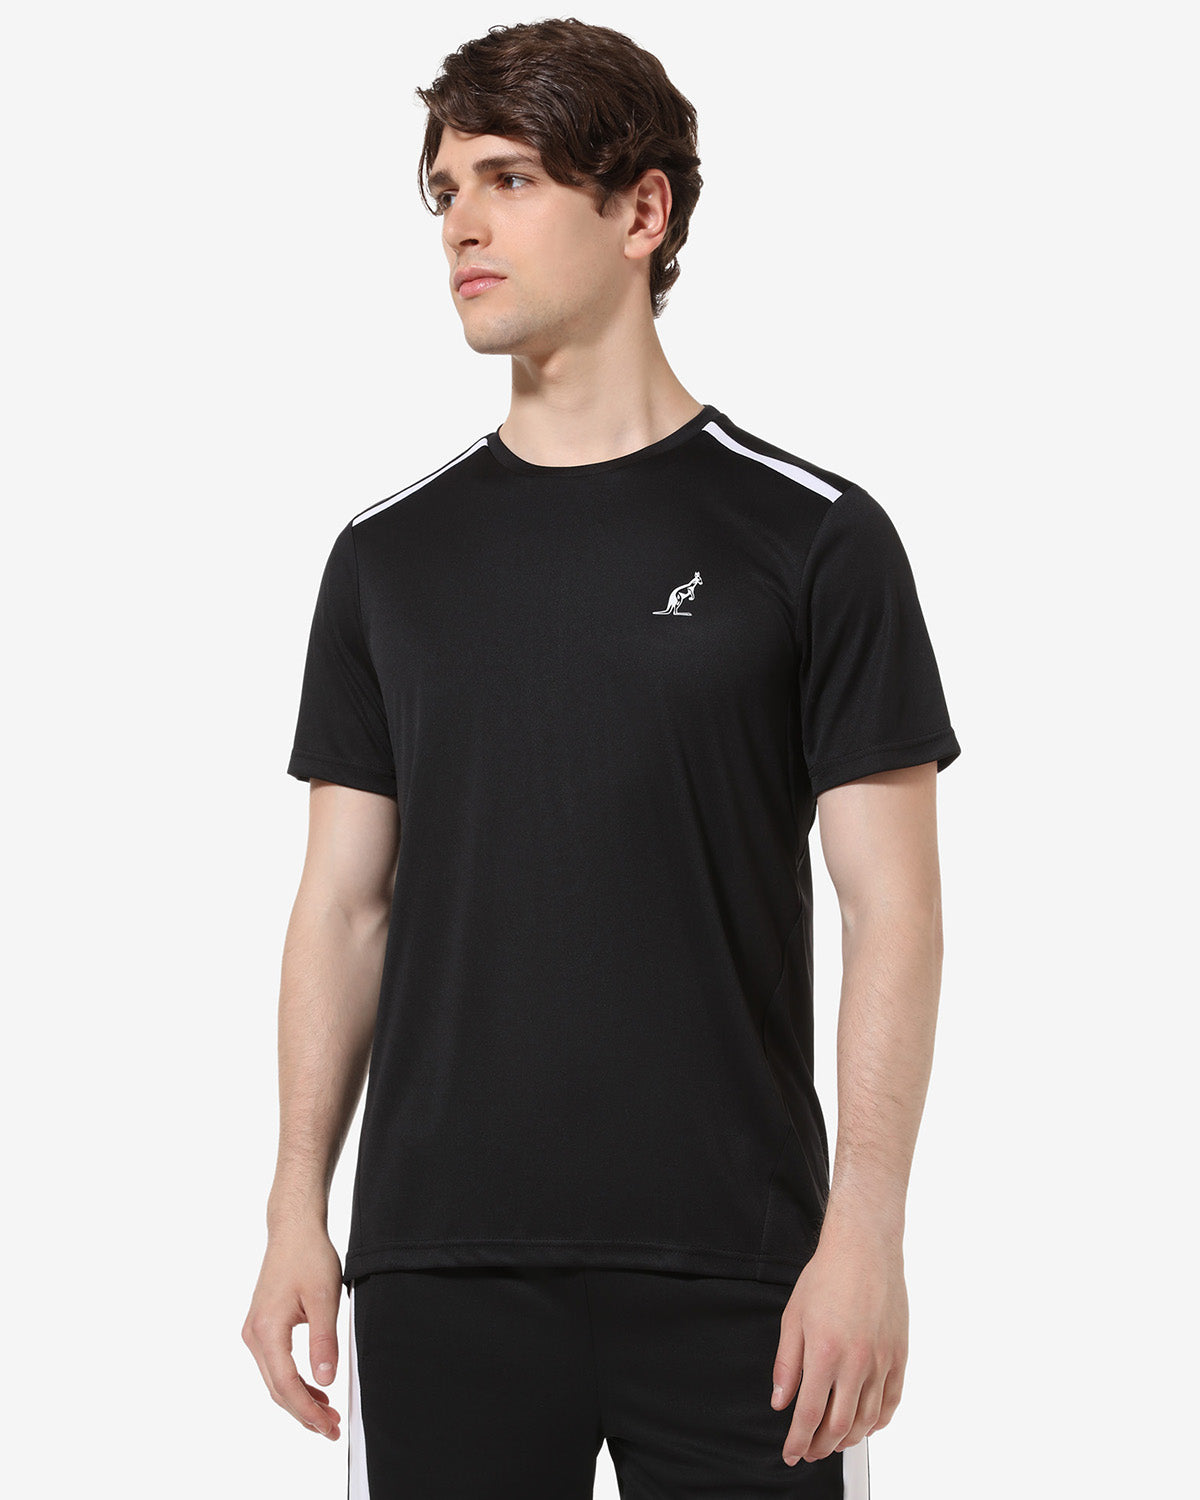 Ace T-Shirt: Australian Tennis